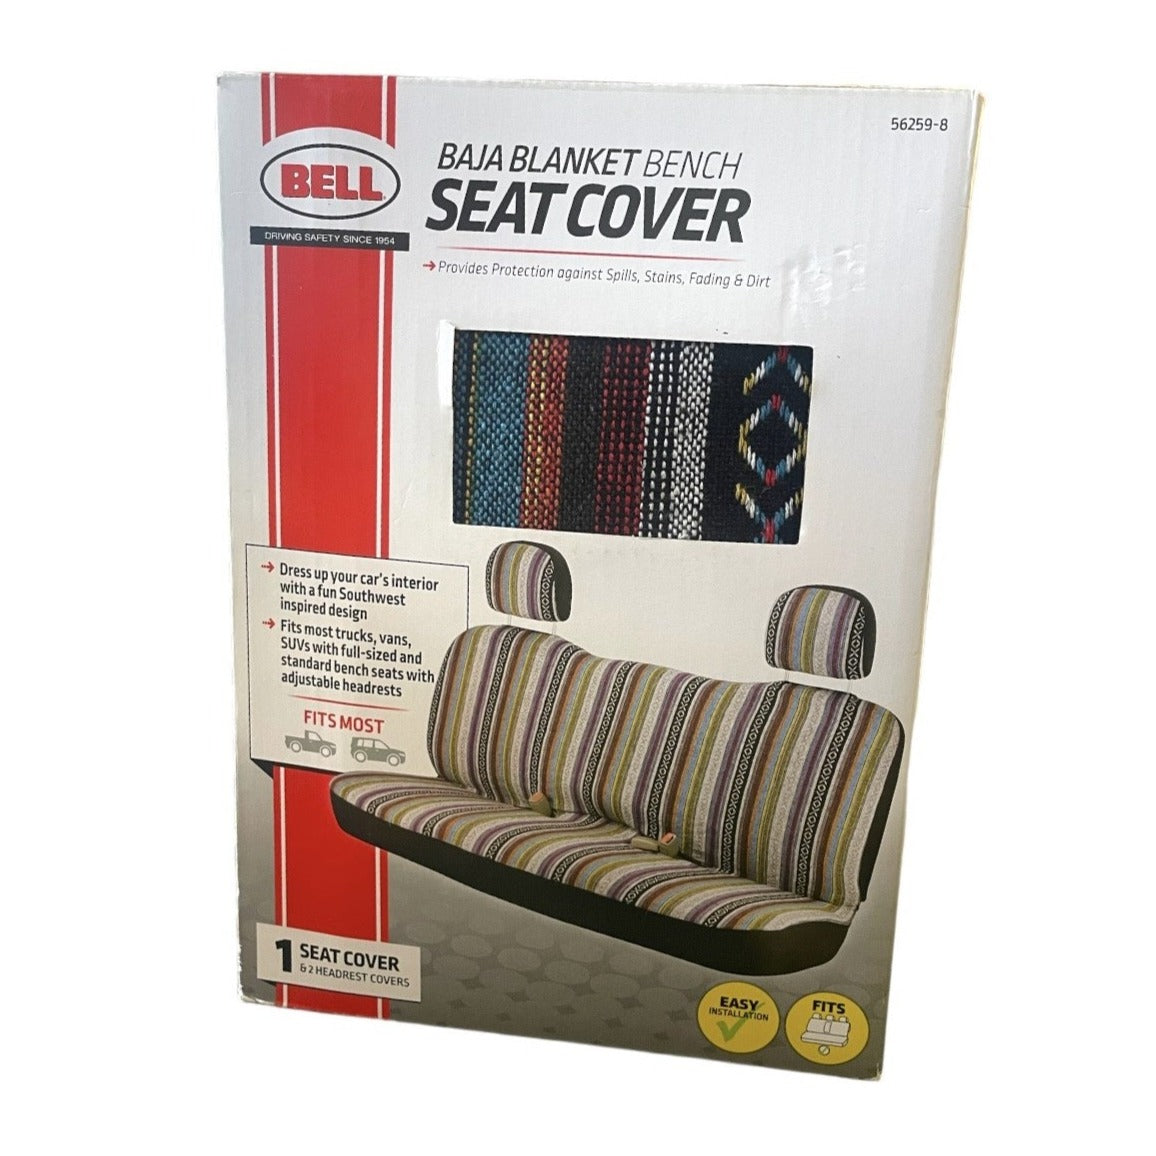 Bell Baja Blanket Bench Seat Cover 56259-8, Southwest Inspired Design